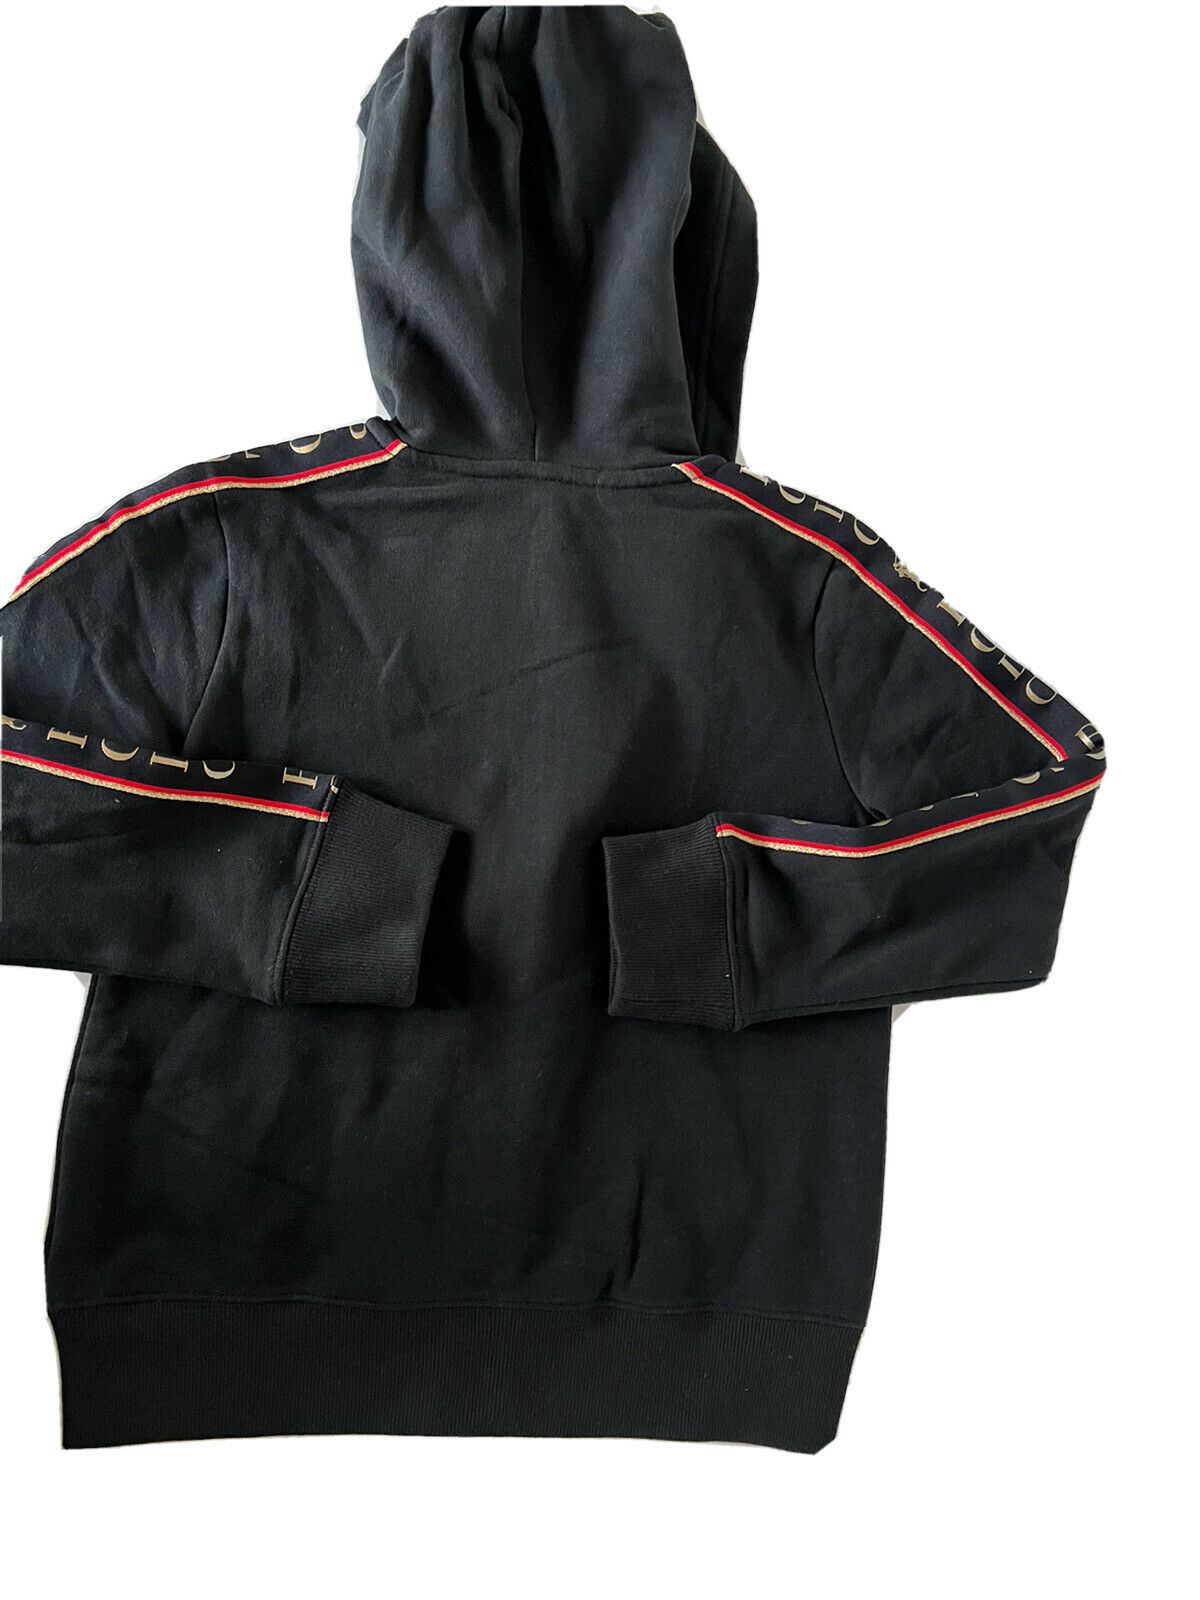 Черная куртка с капюшоном для девочек NWT Polo Ralph Lauren S (7)